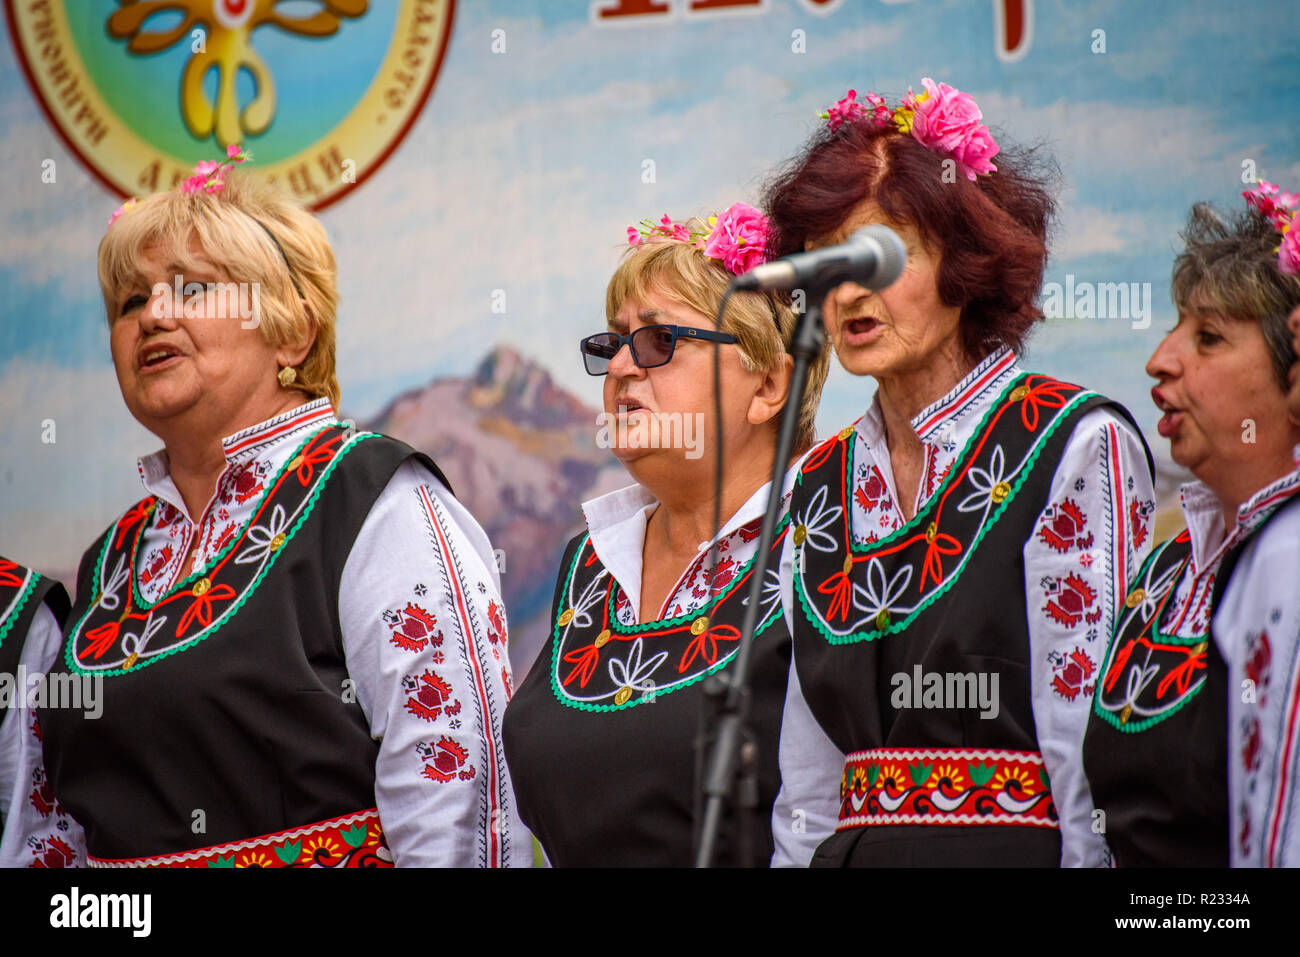 Groupe de femmes en costumes folkloriques bulgares traditionnels - chanter une chanson à un festival de musique dans la petite ville d'Apriltsi, Bulgarie. Banque D'Images